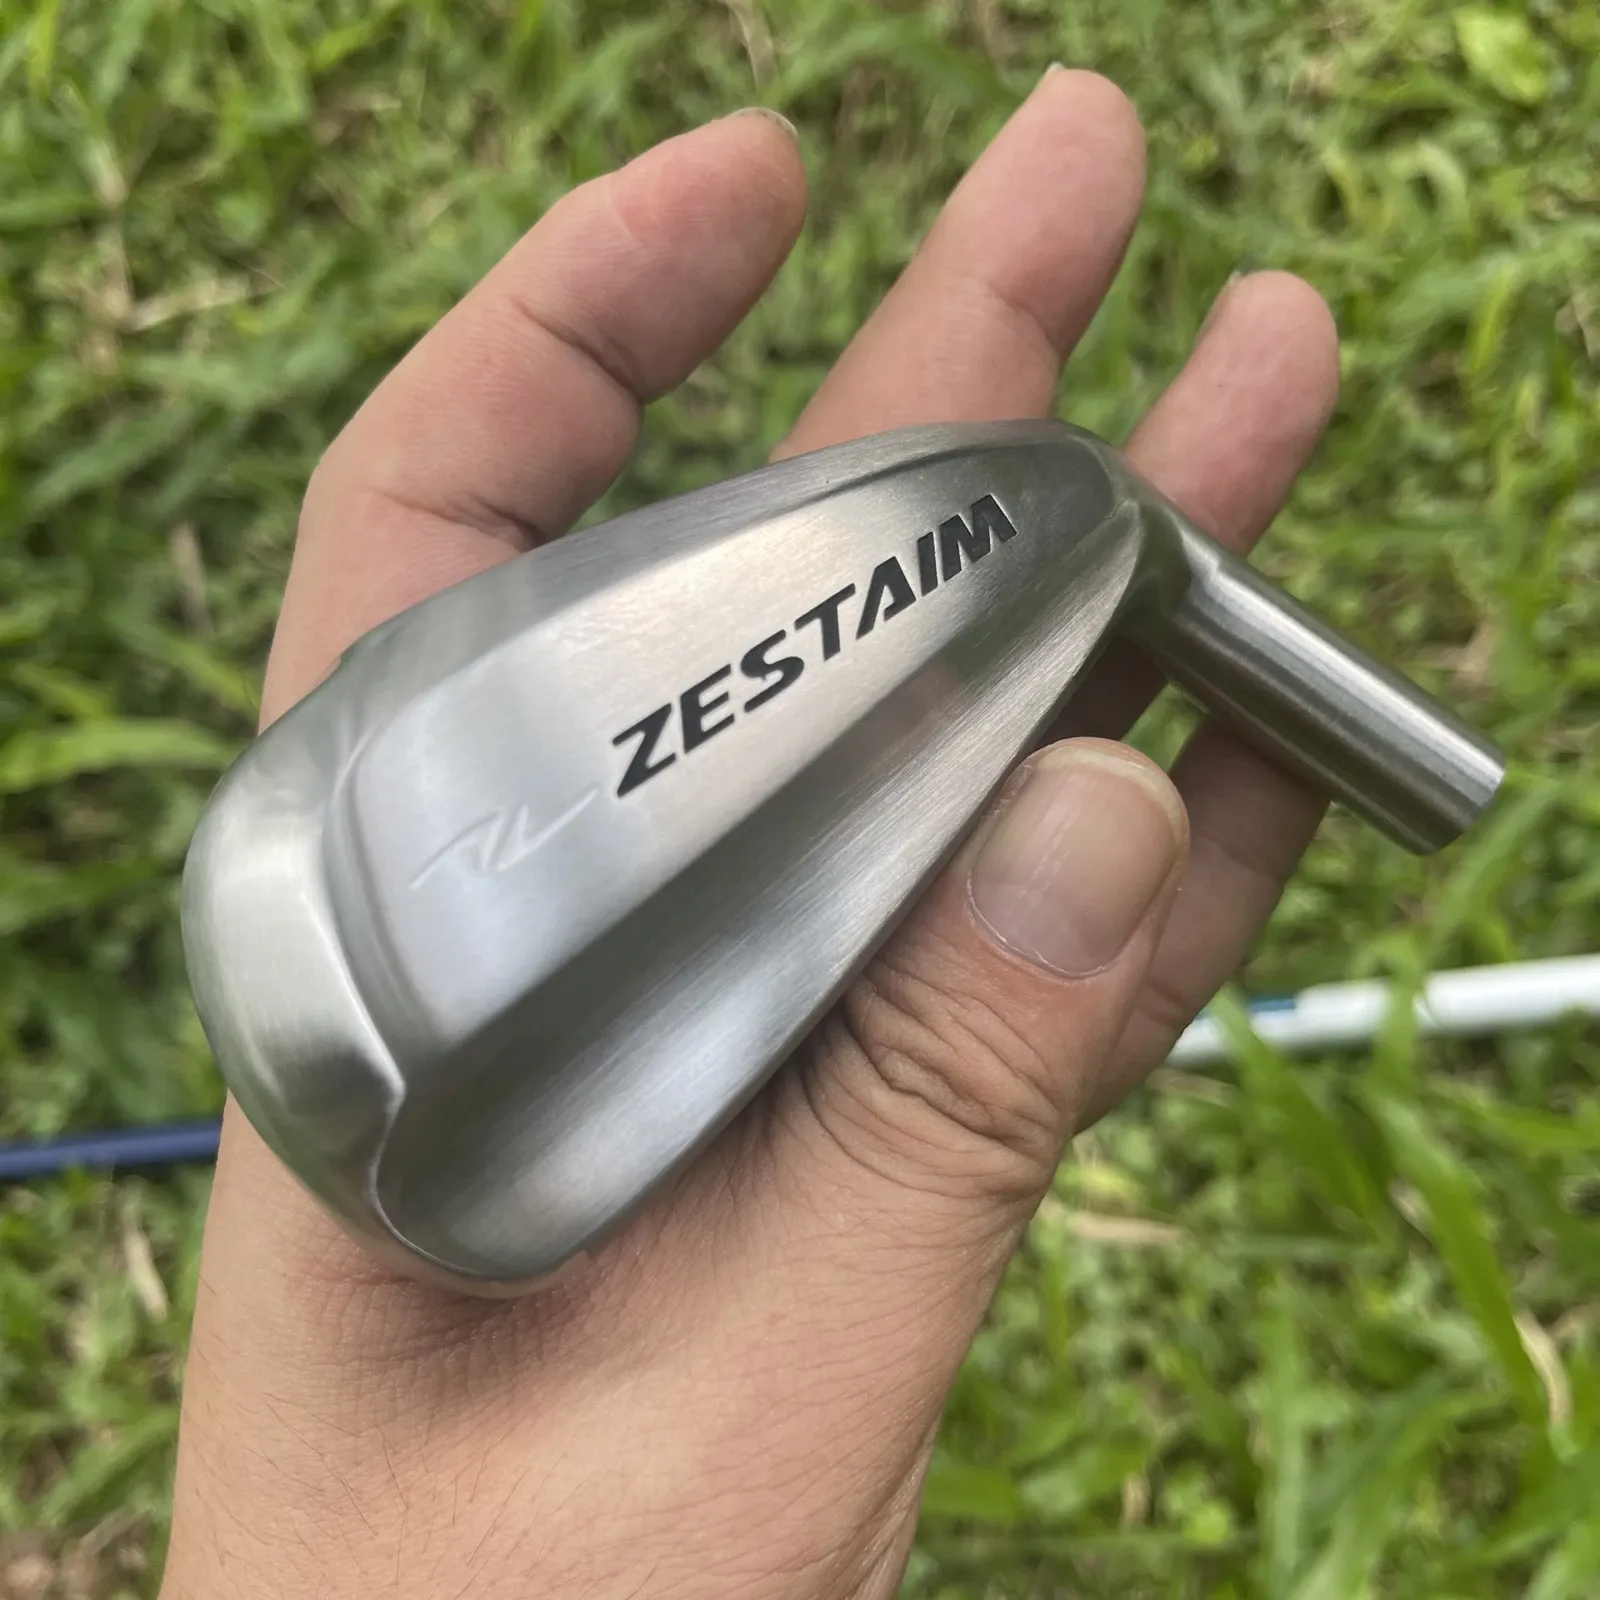 Clubes 2022 Novos híbridos de golfe Zestaim Ironwood 17 20 graus com eixo de grafite ou tacos de golfe de capa de eixo de aço